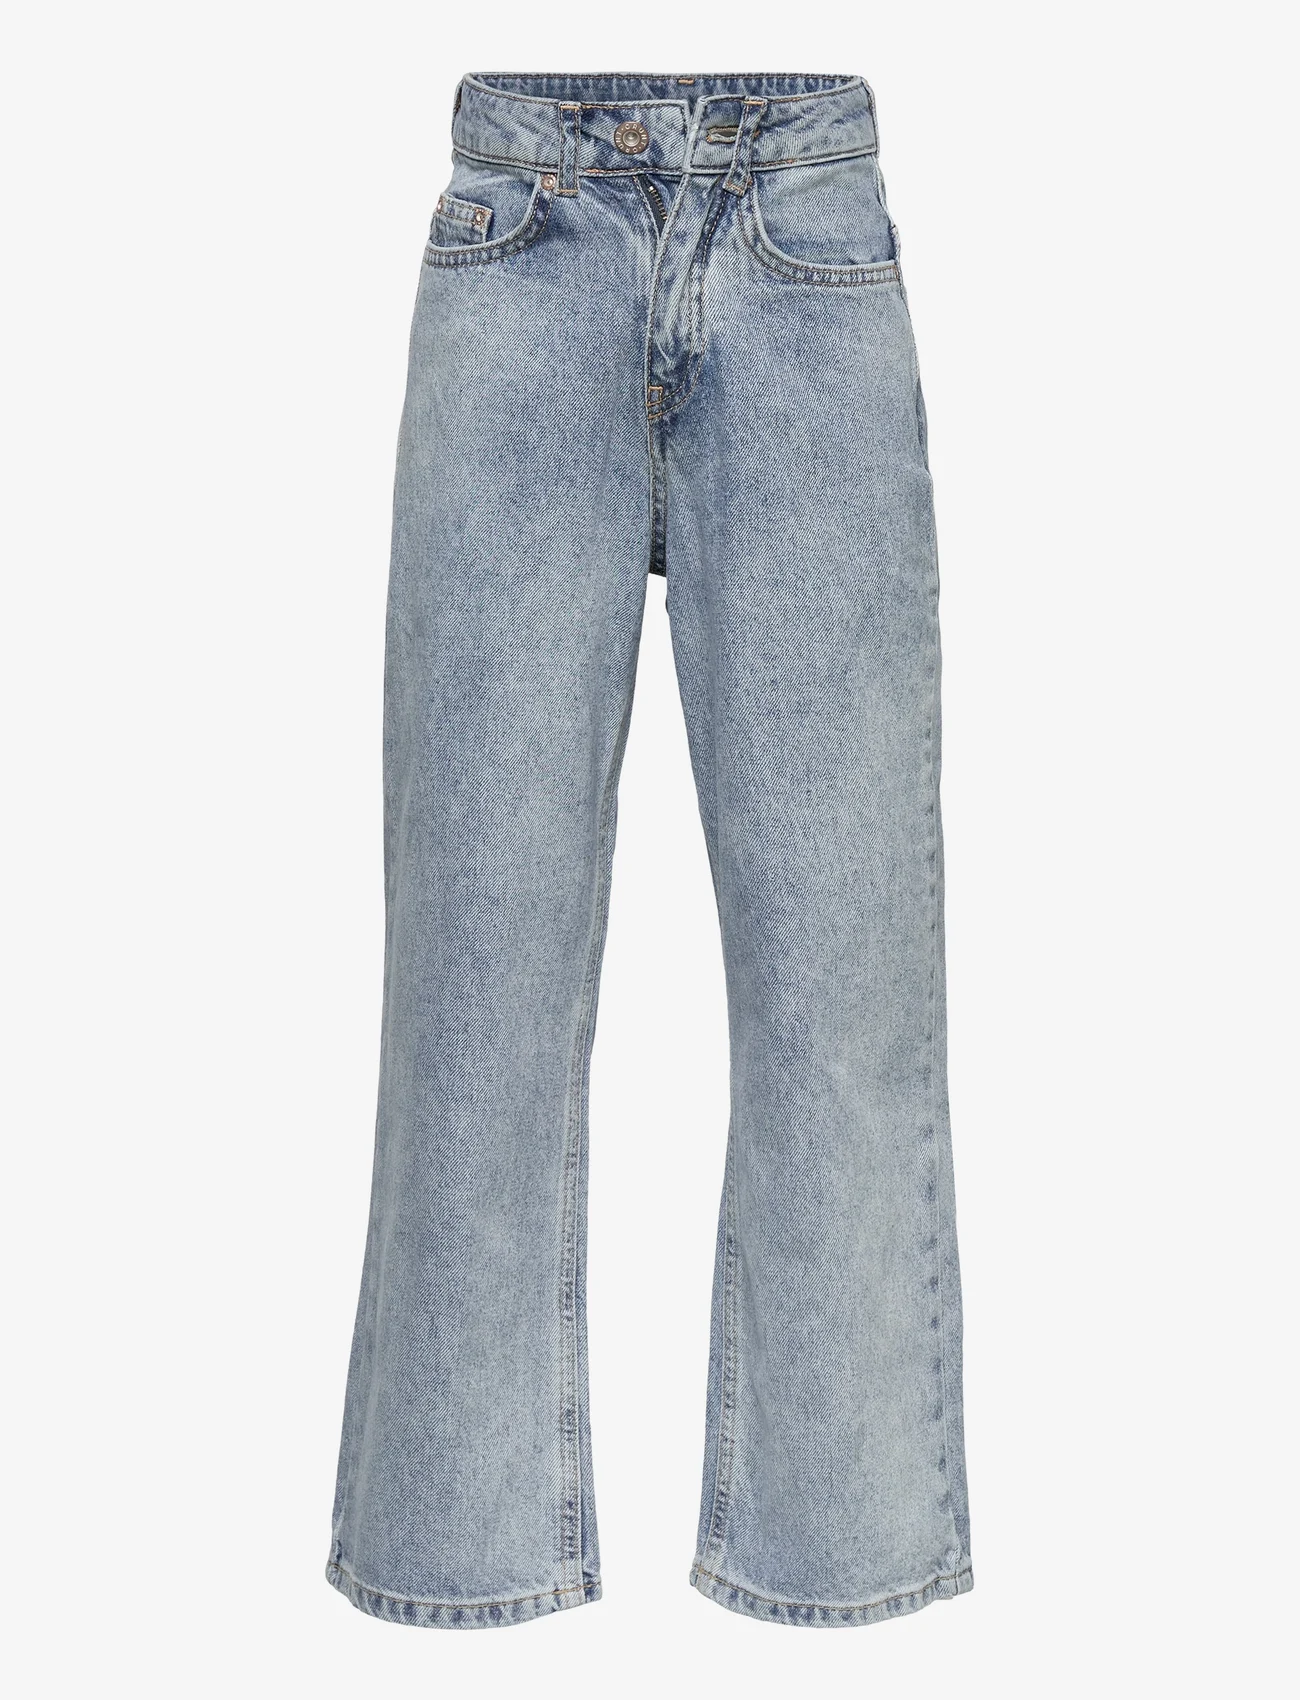 Grunt - Wide leg Iris - jeans met wijde pijpen - iris - 0